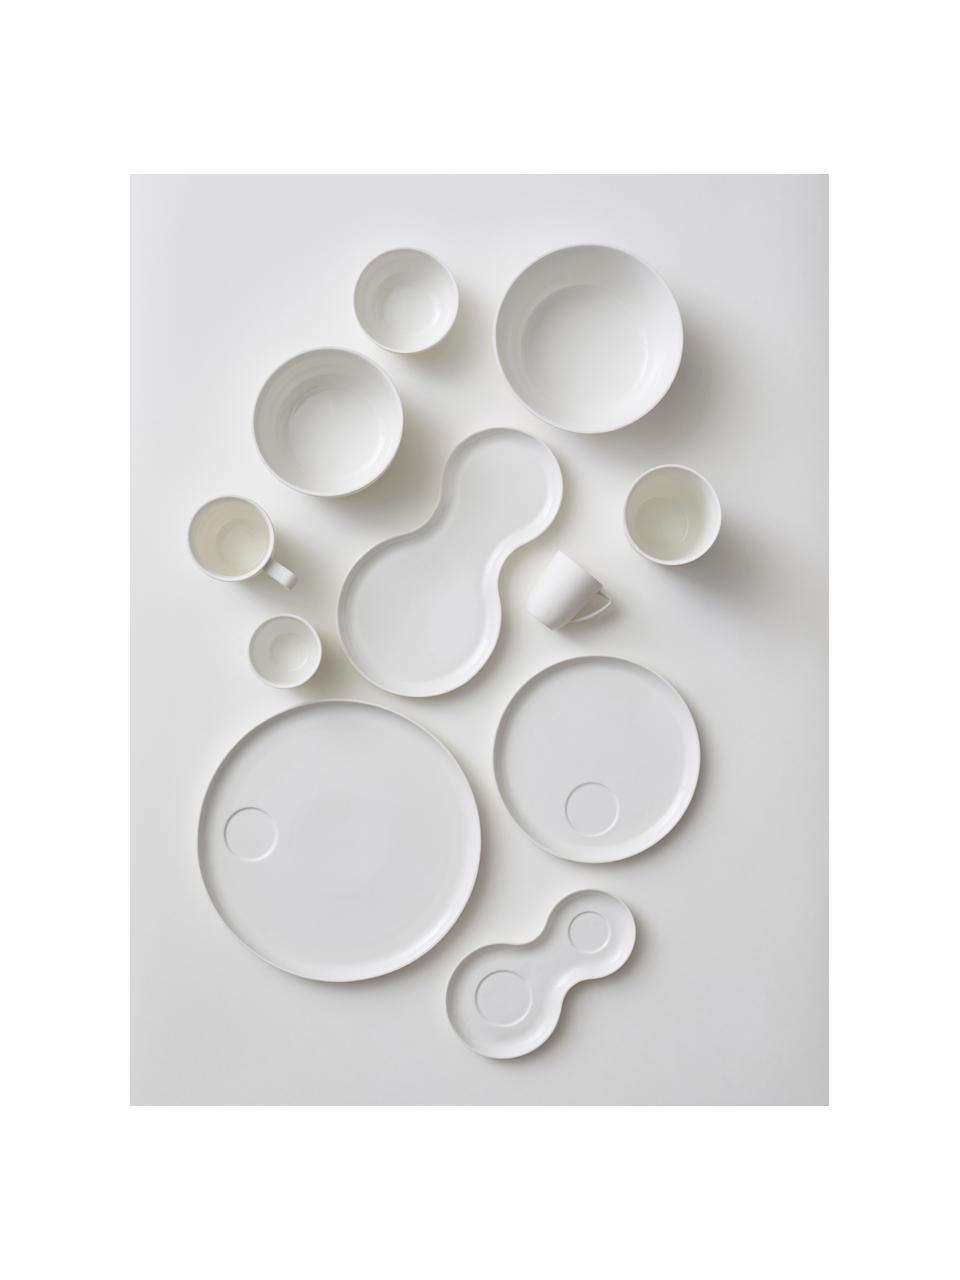 Beker Nudge in wit mat/glanzend, 4 stuks, Porselein, Gebroken wit, Ø 9 x H 10 cm